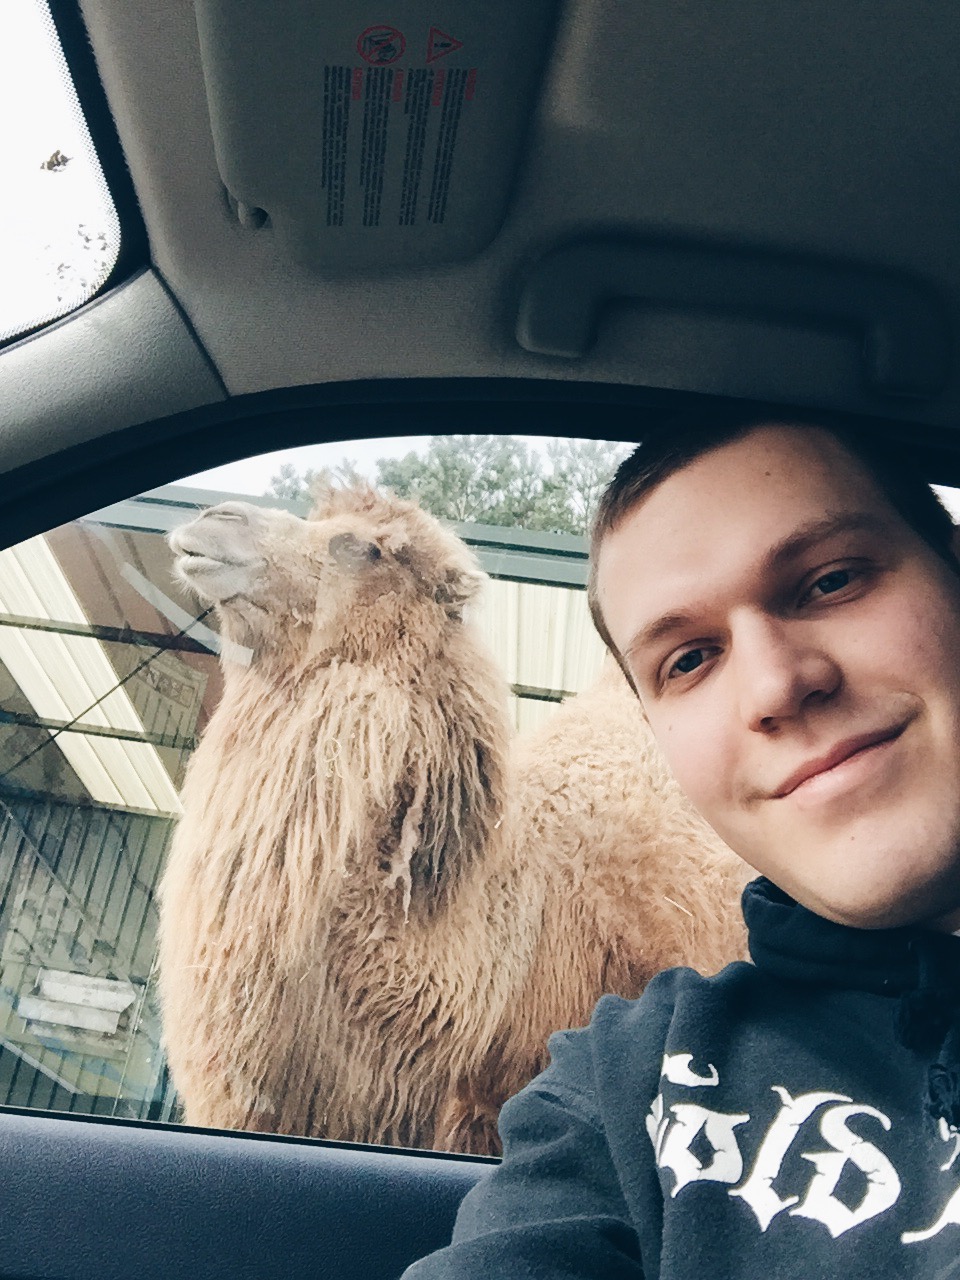 Sam Selfie met kameel